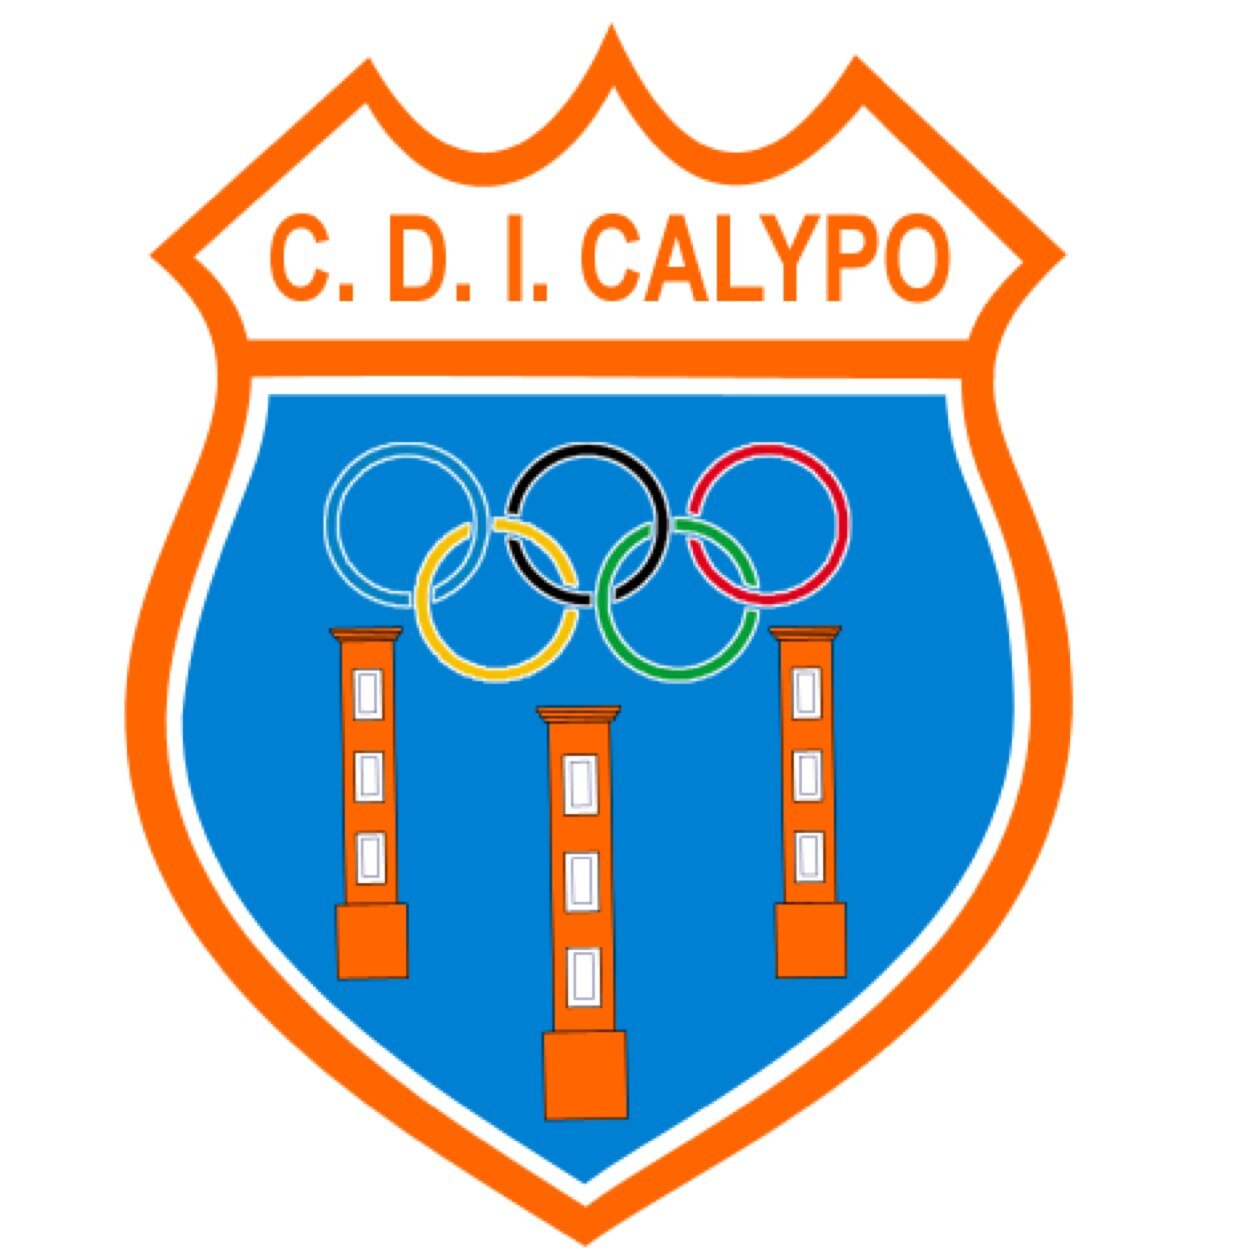 Club Deportivo Independiente calypo Fado Fundado en 2011. Perteneciente a la Urbanizacion Calypo Fado. CAMPEON de liga 2012-2013 ASCENSO a 2ª REGIONAL.